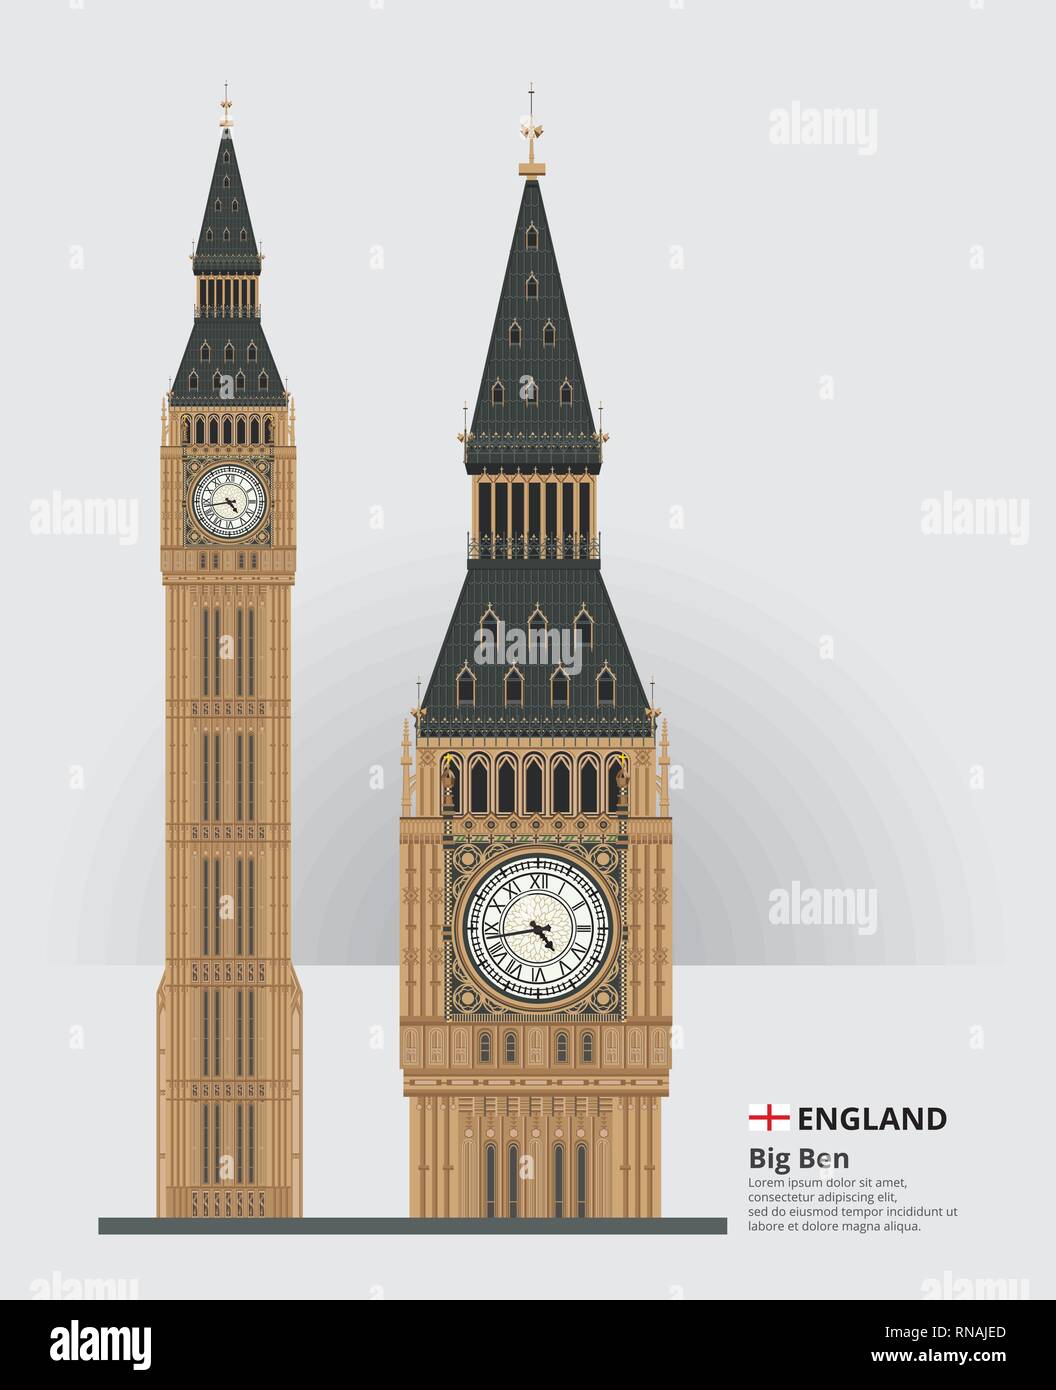 England Wahrzeichen Big Ben und reisen Sehenswürdigkeiten Vector Illustration Stock Vektor